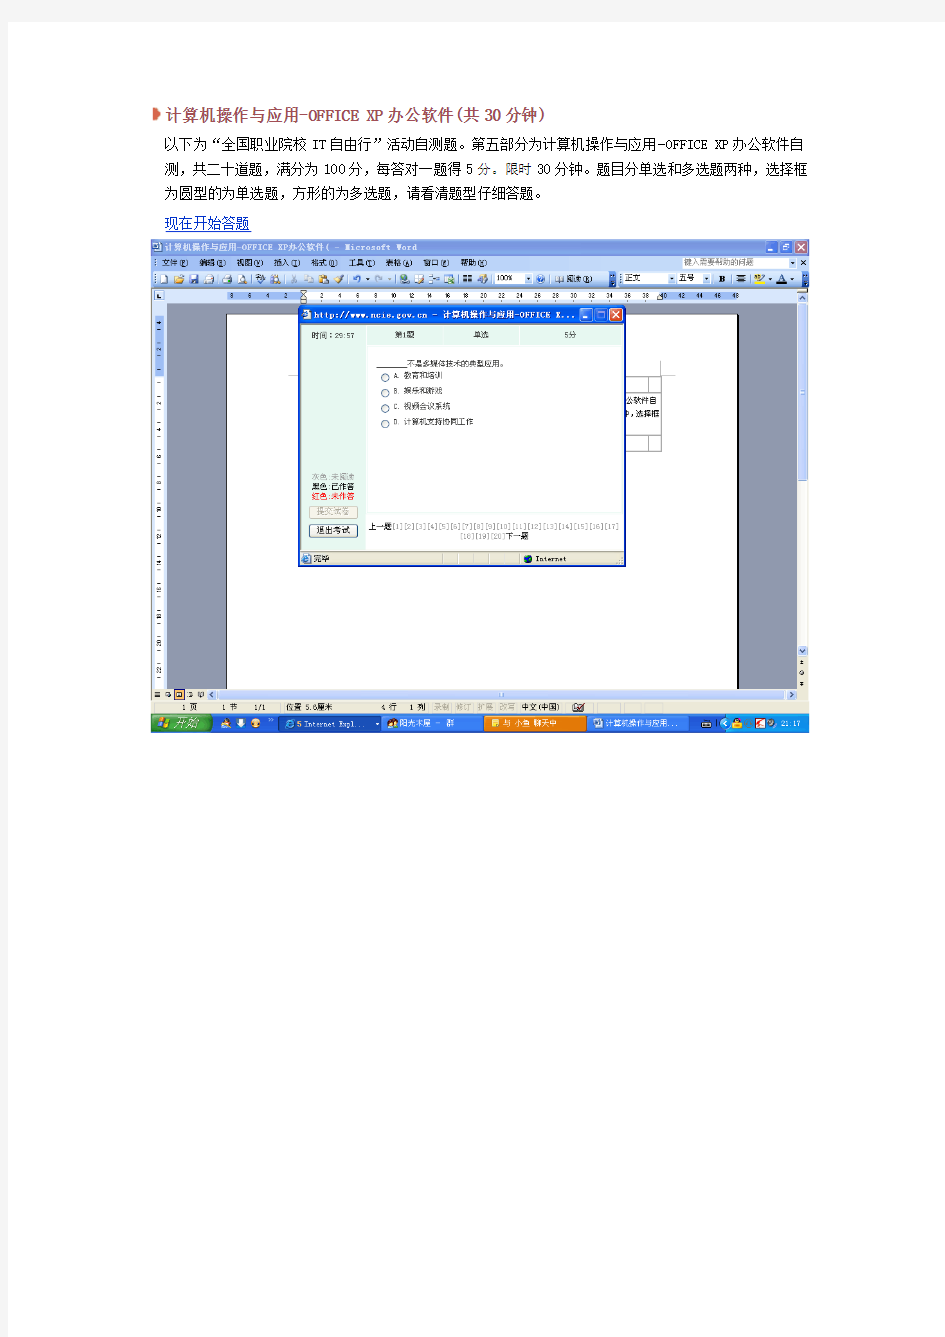 计算机操作与应用-OFFICE XP办公软件(